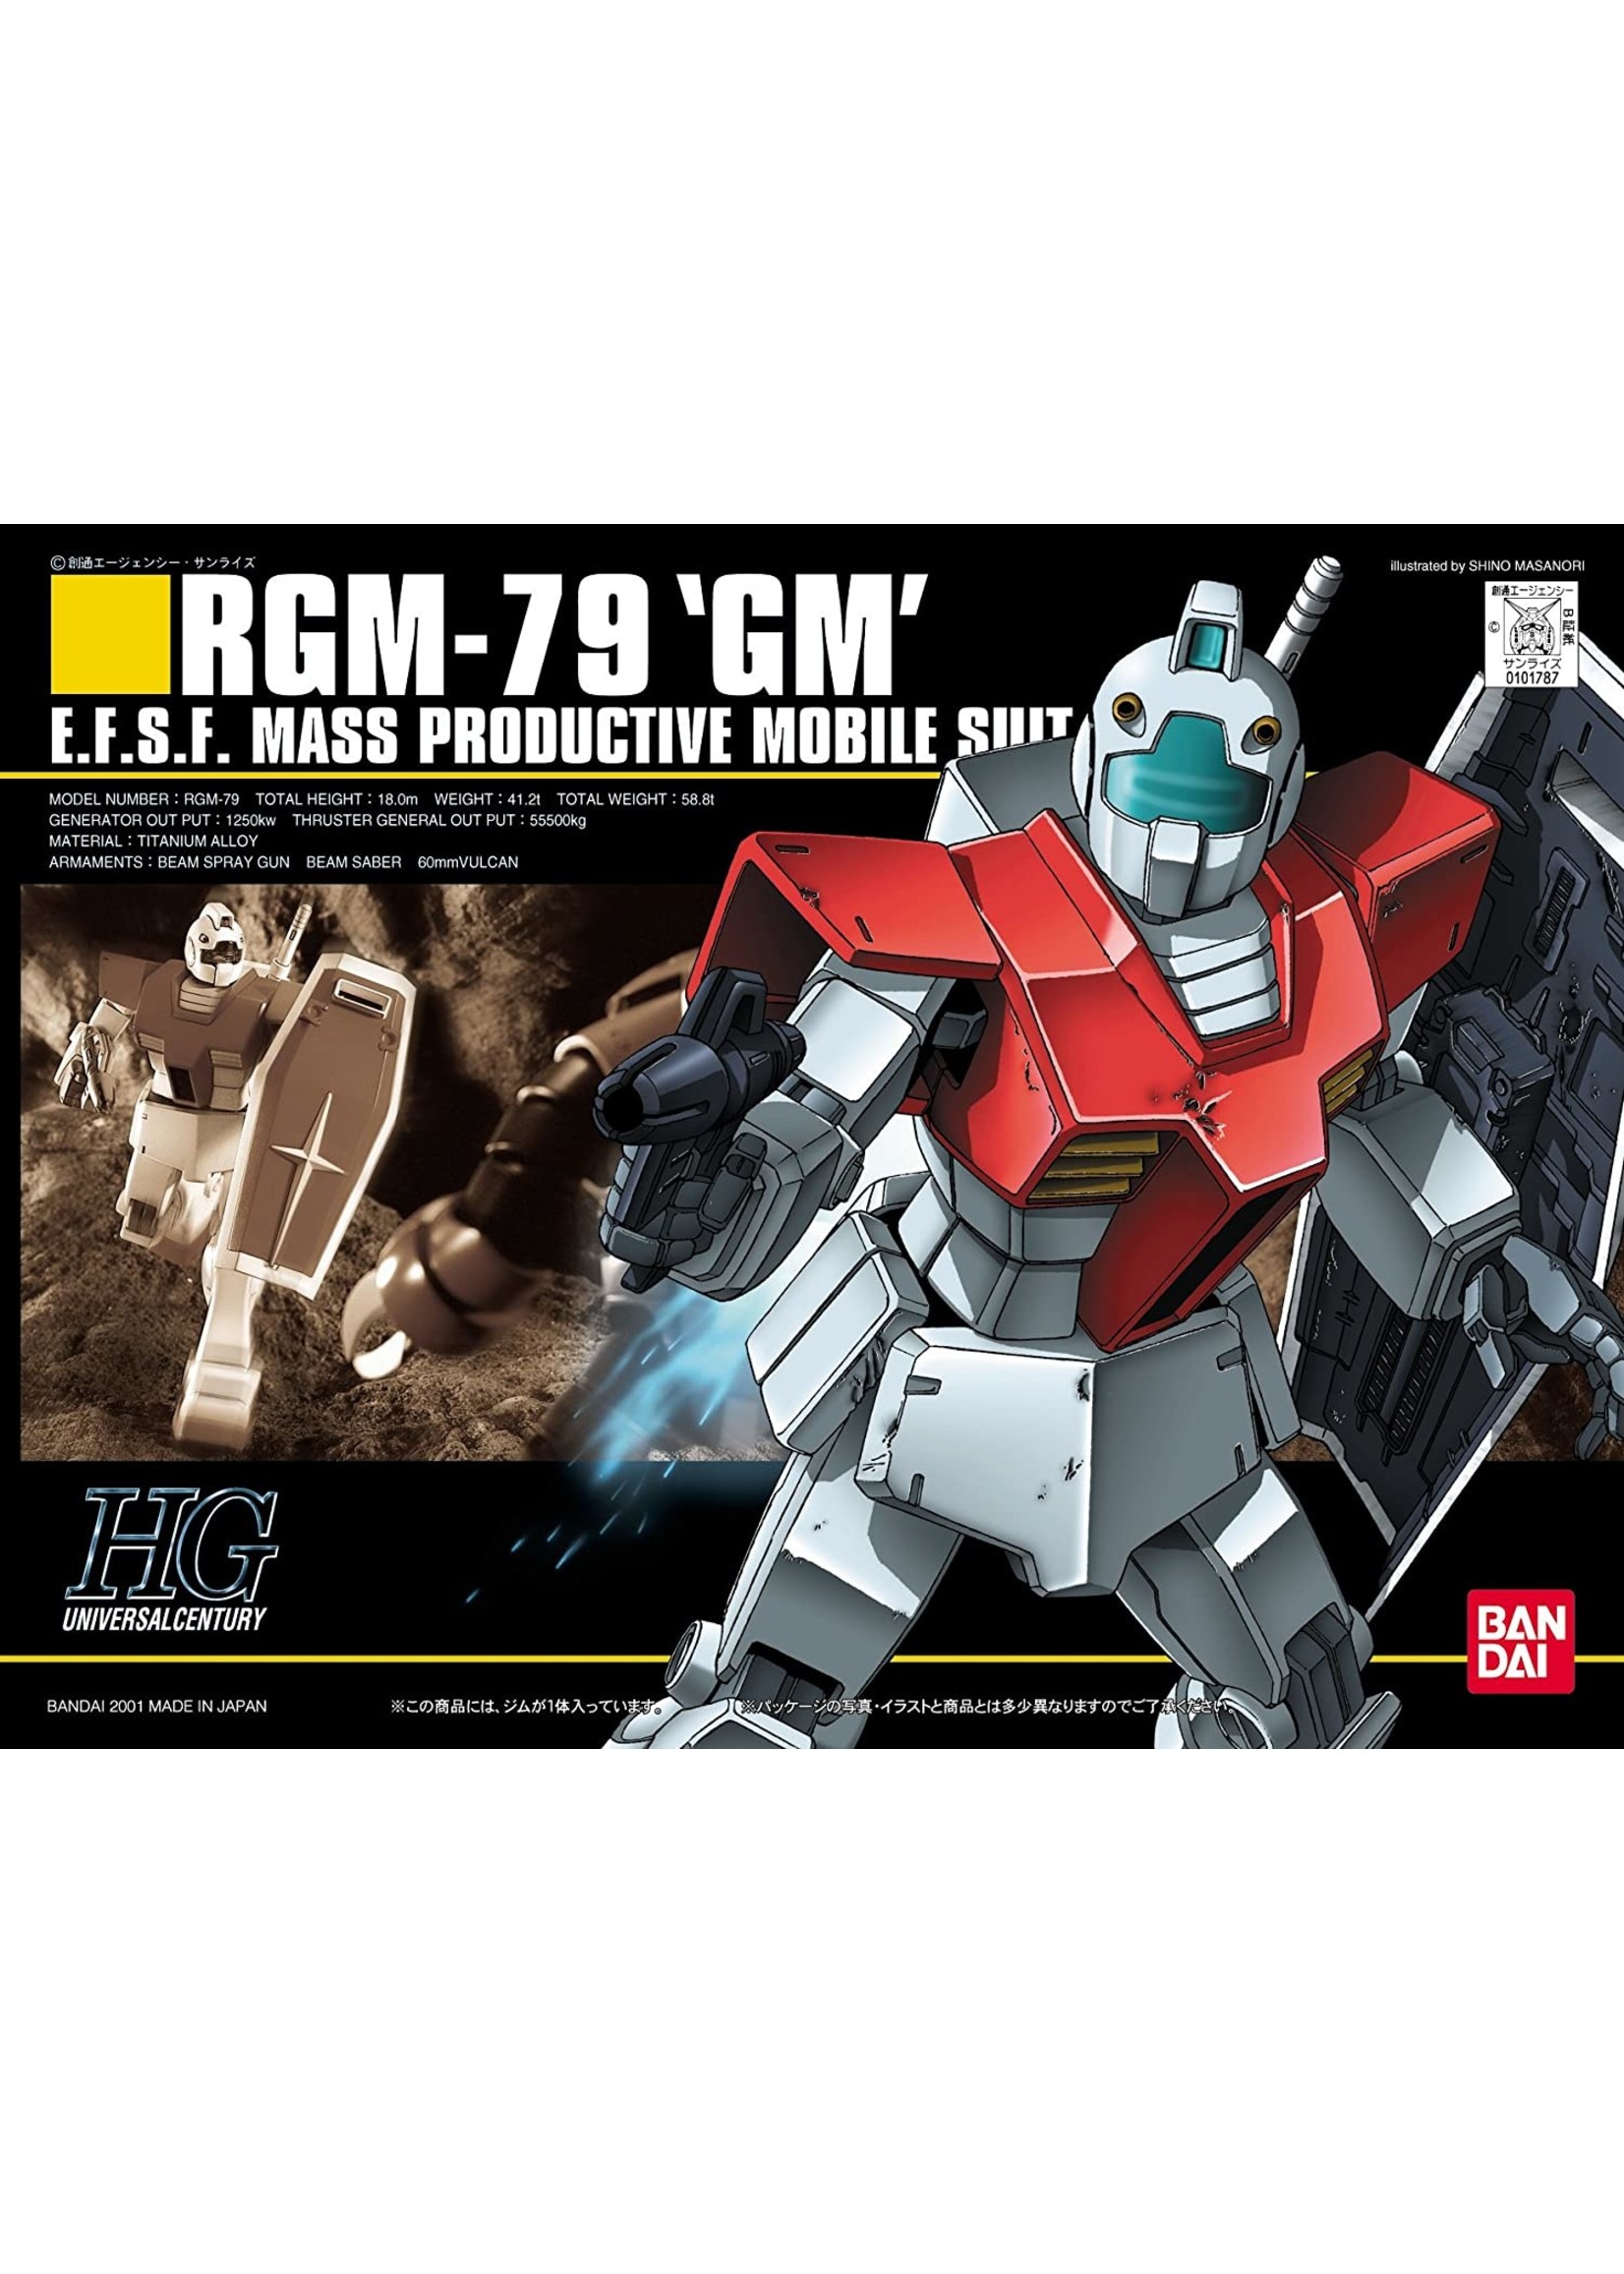 Bandai #20 RGM-79 GM